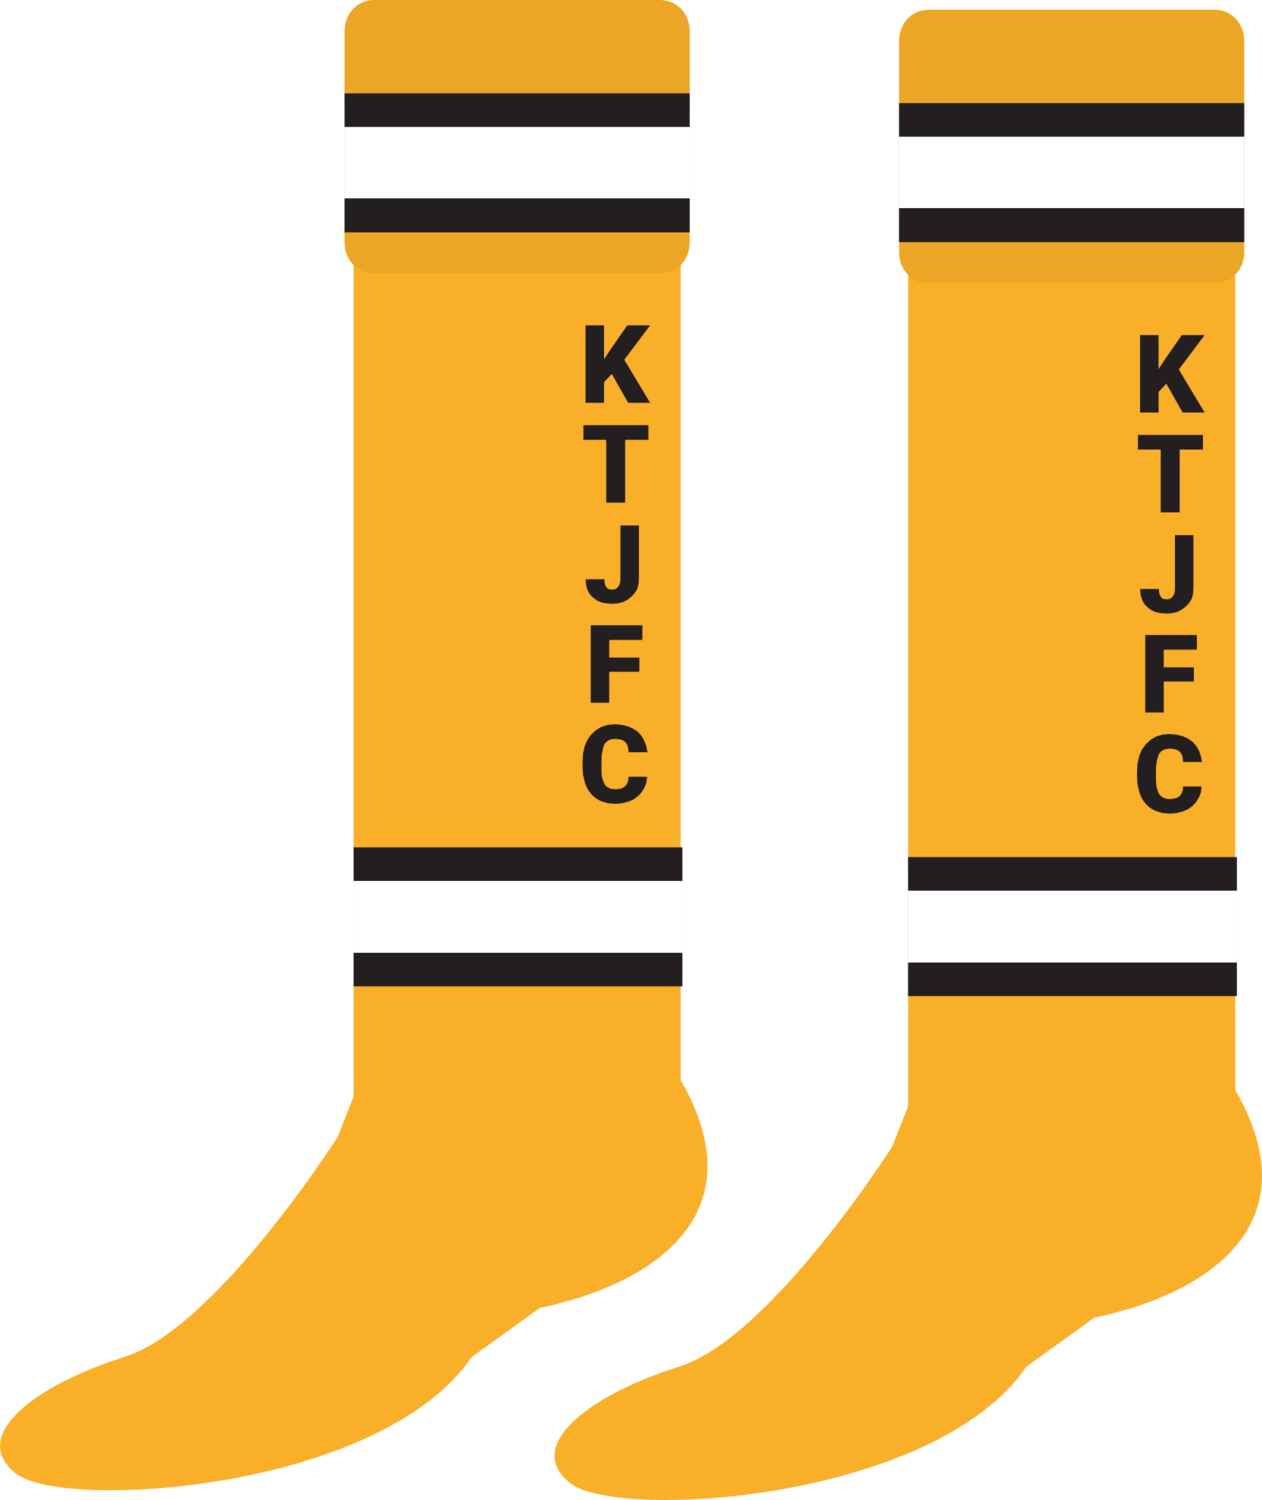 KTJFC - Bespoke Club Socks (Adults)